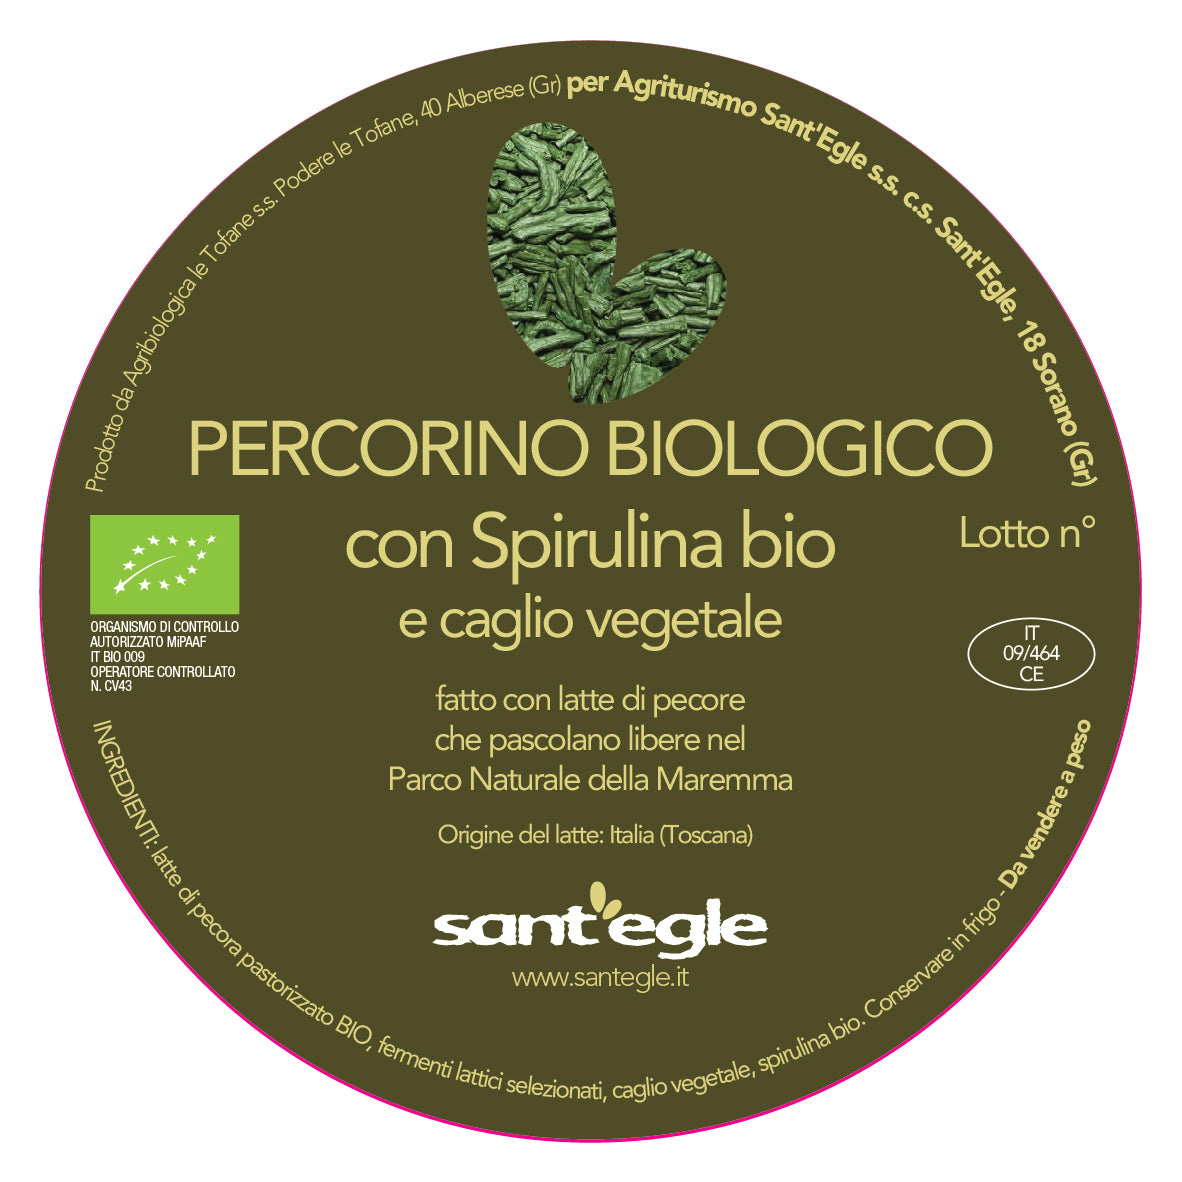 Pecorino Biologico alla Spirulina con 3 composte BIO in agrodolce biologiche